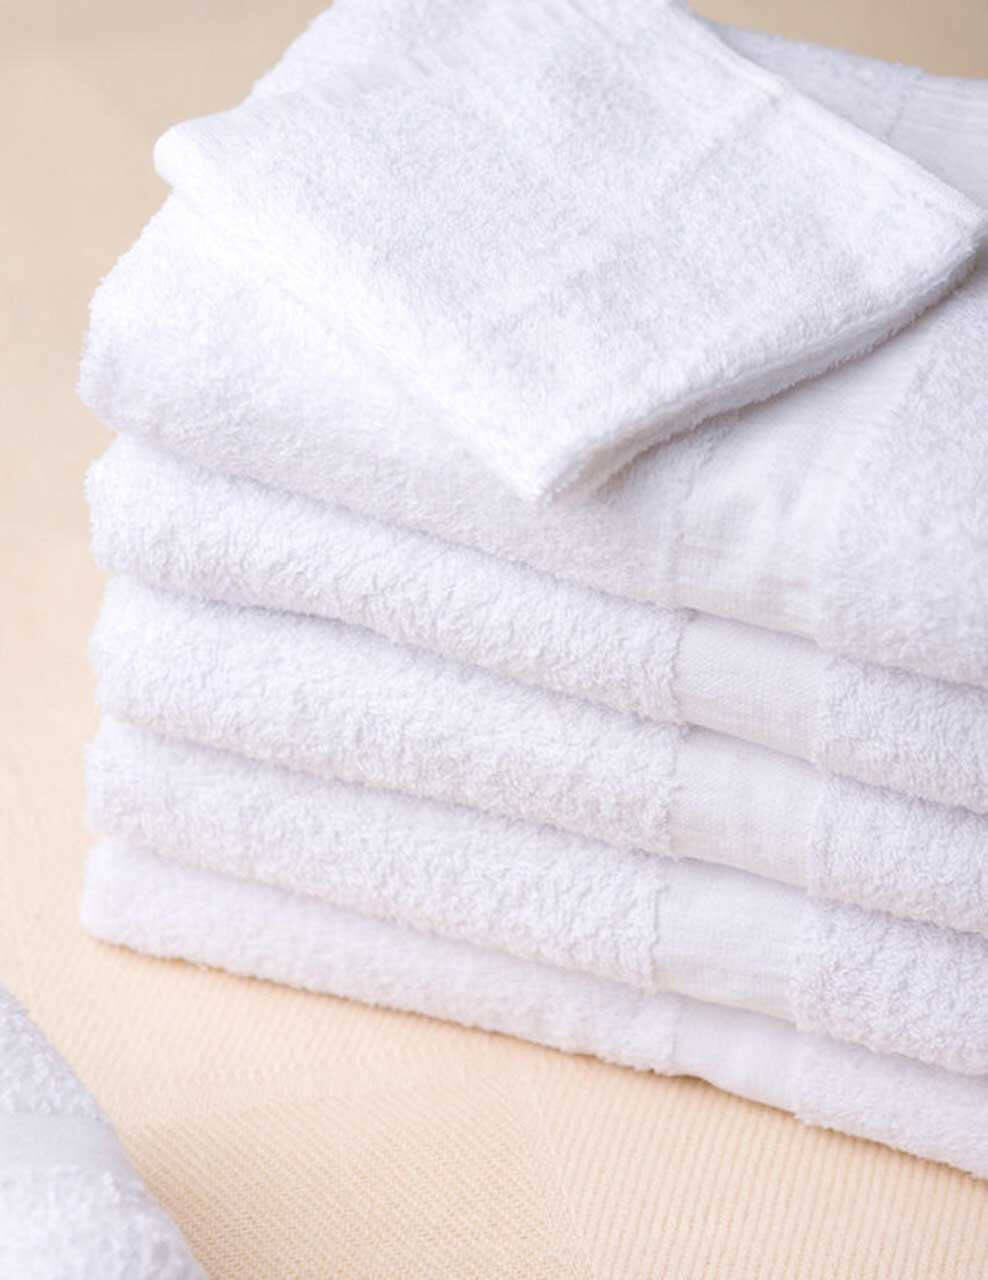 Do Hospitals Provide Towels?